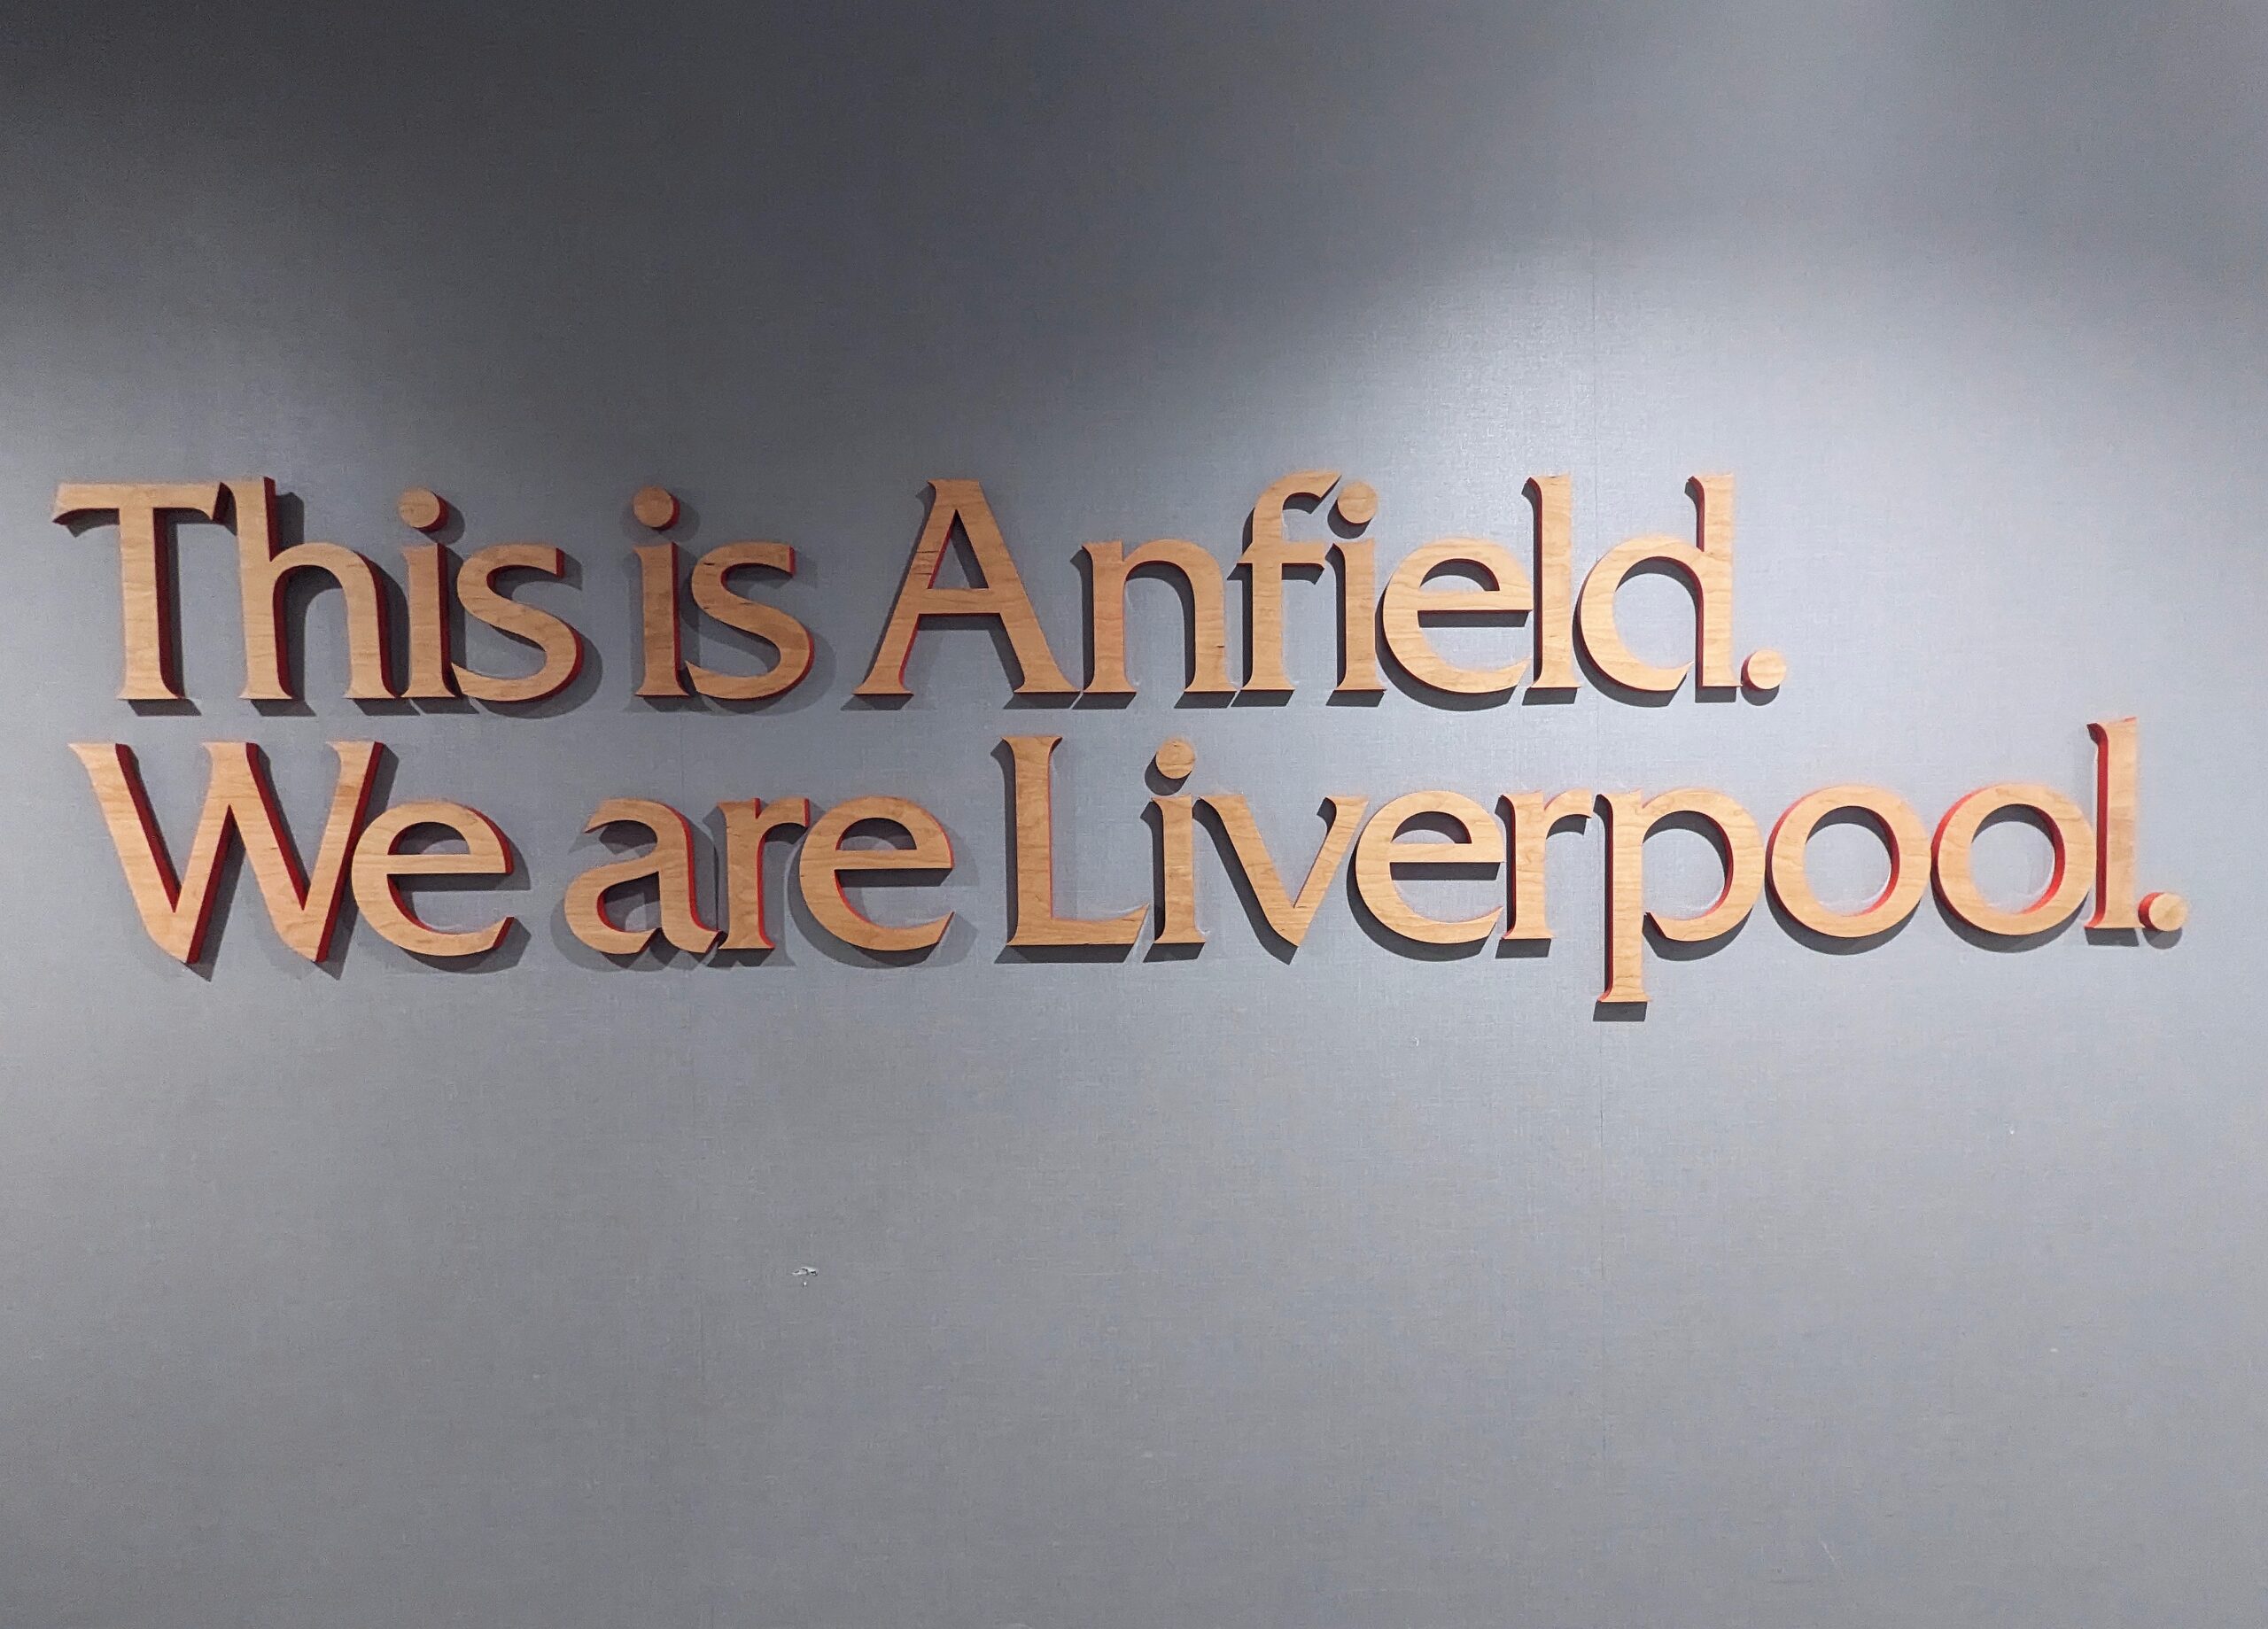 Schriftzüge im Stadion des FC Liverpool